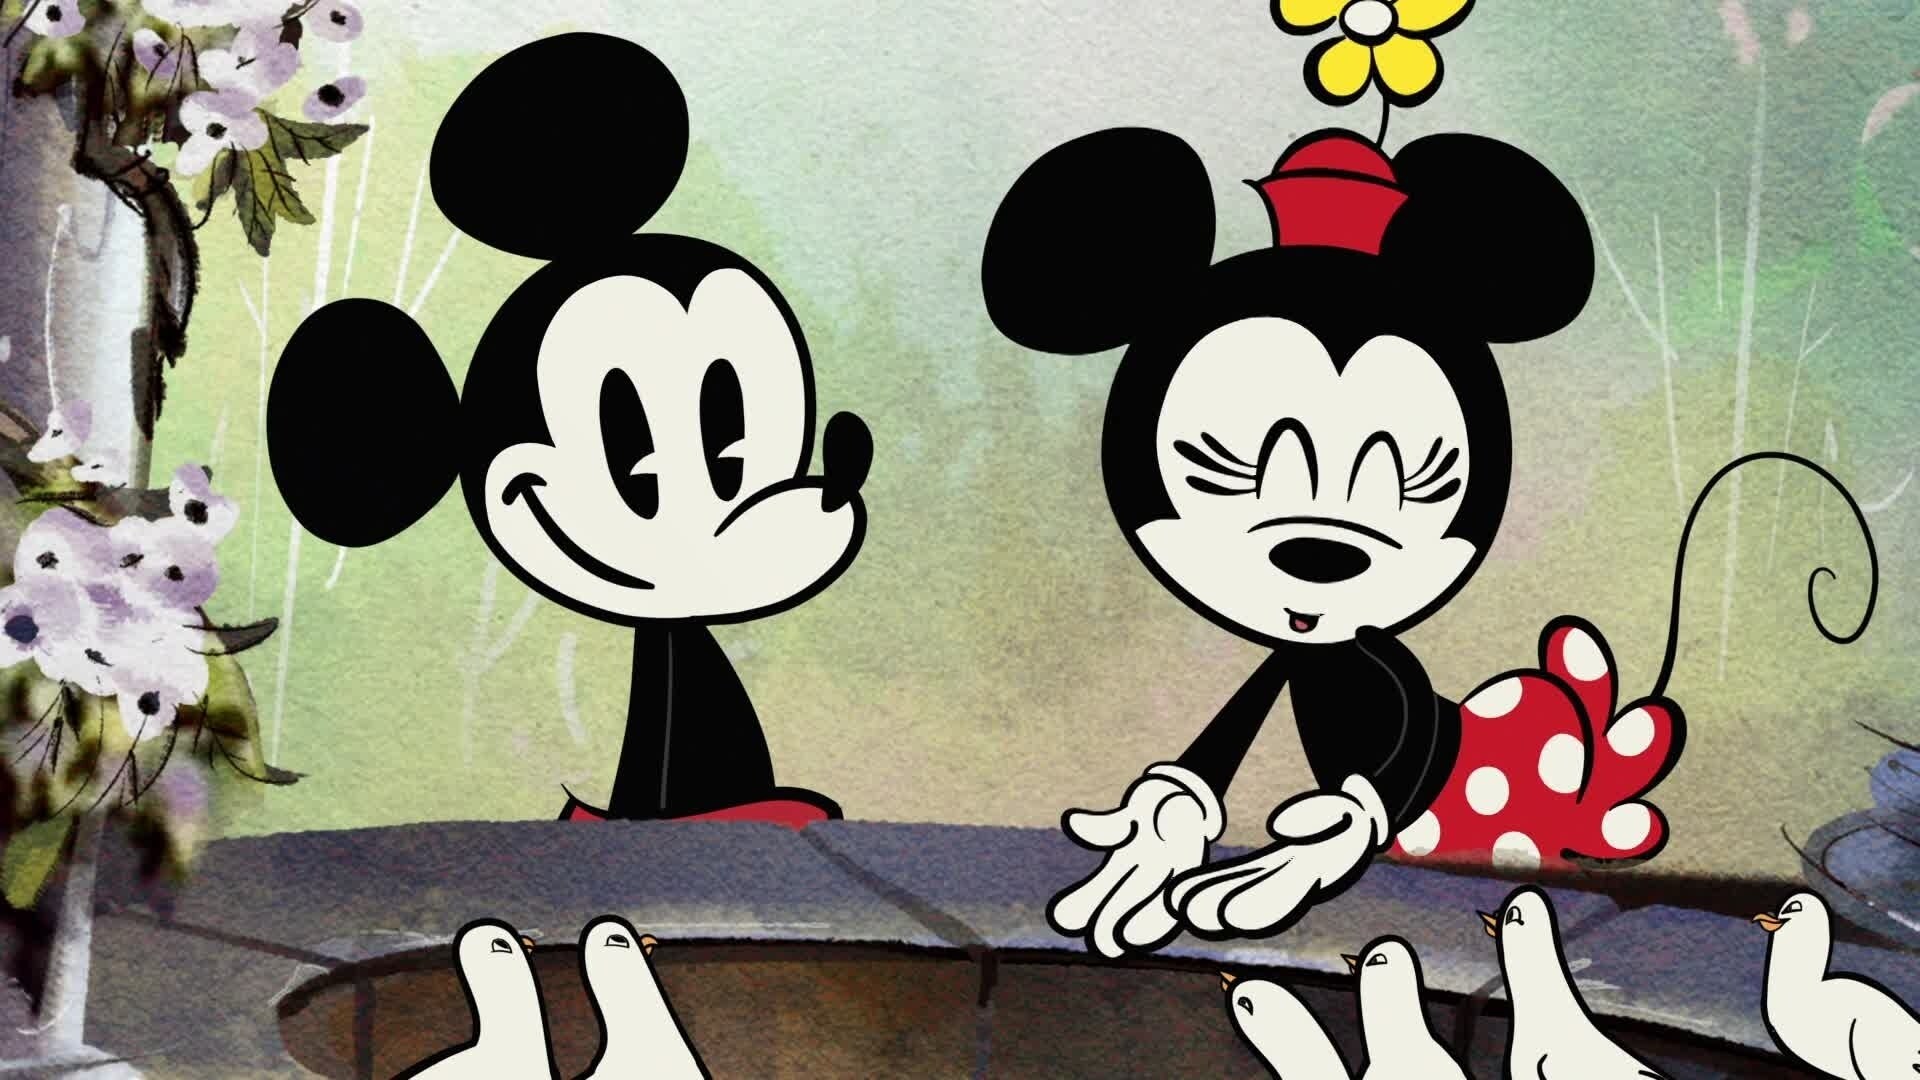 La Maison de Mickey Saison 4 - Episode 3 "Le goûter de Minnie la